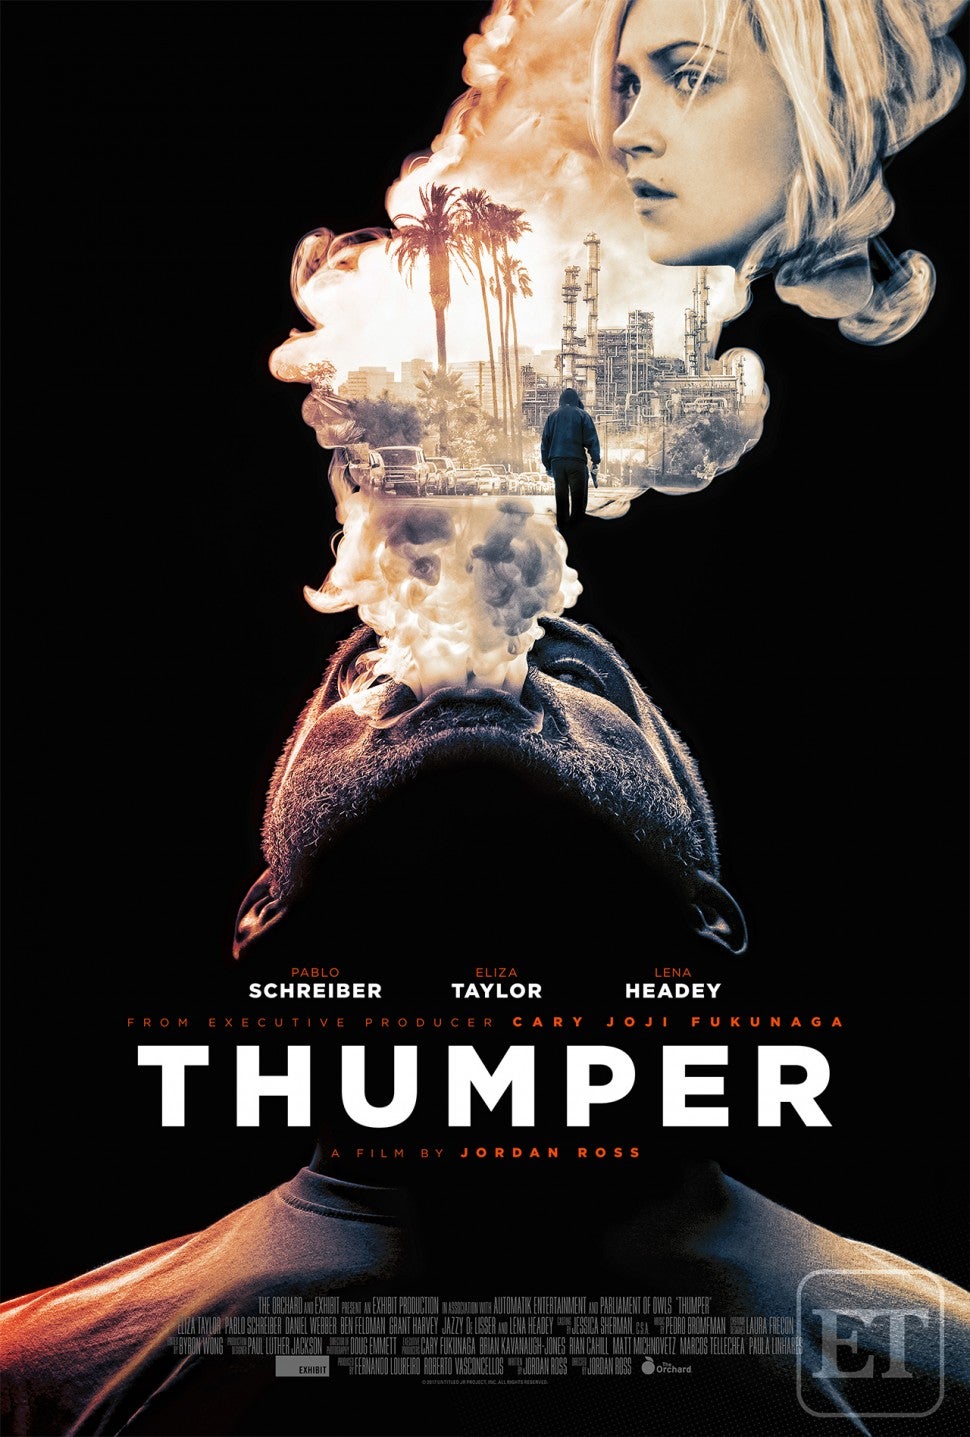 Pablo Schreiber in Thumper Poster